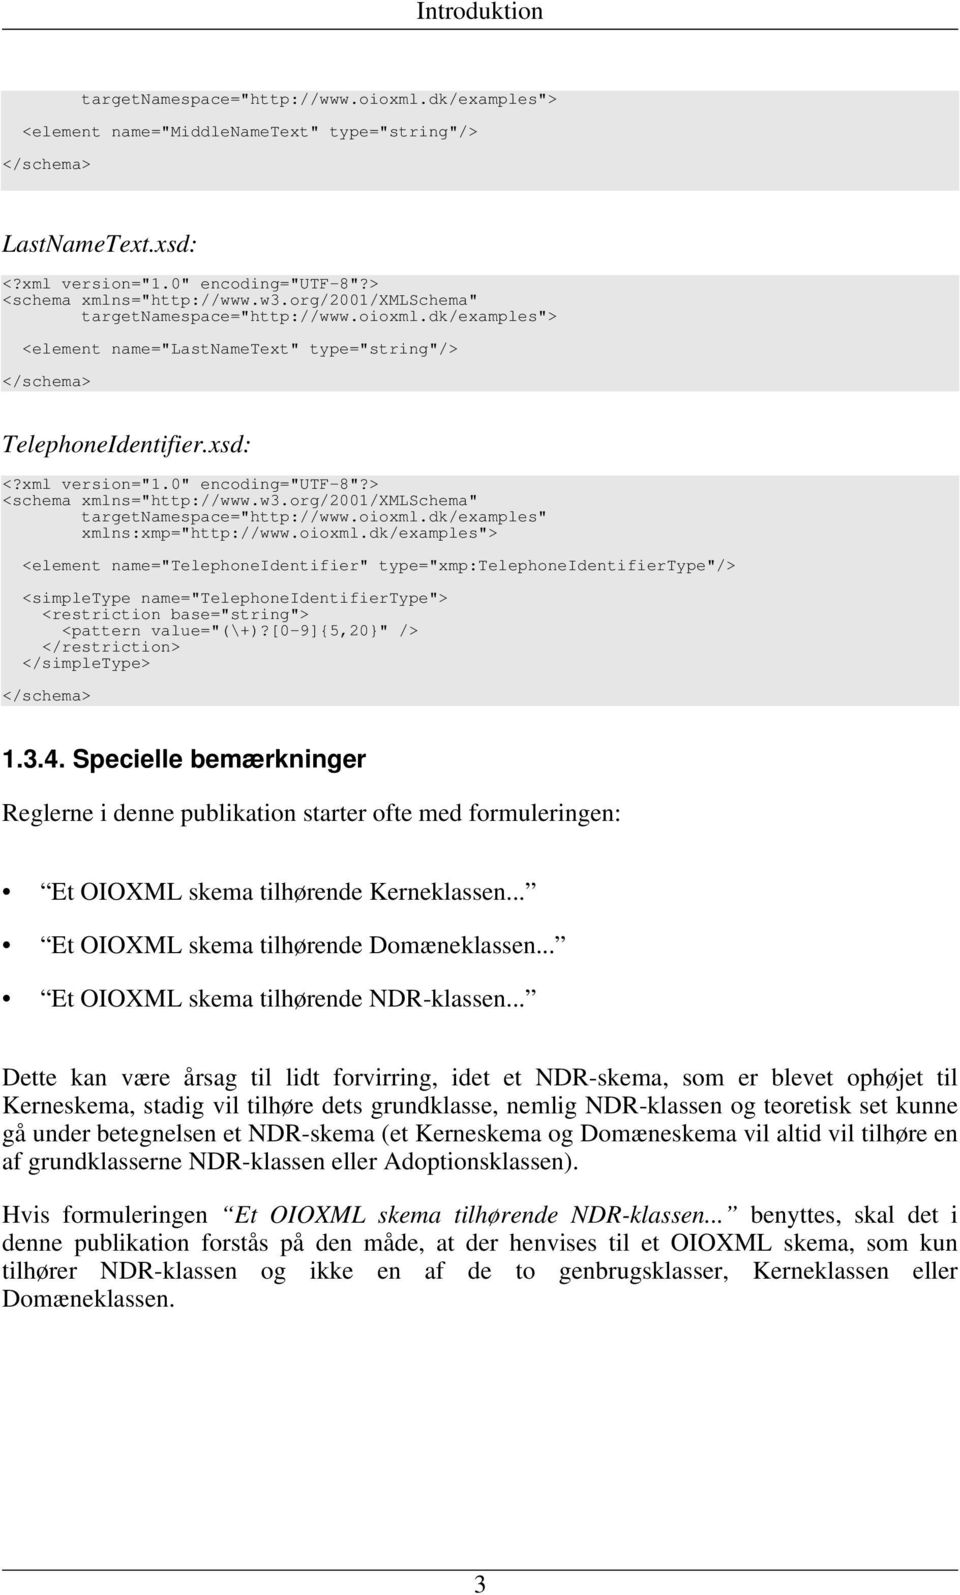 0" encoding="utf-8"?> <schema xmlns="http://www.w3.org/2001/xmlschema" targetnamespace="http://www.oioxml.